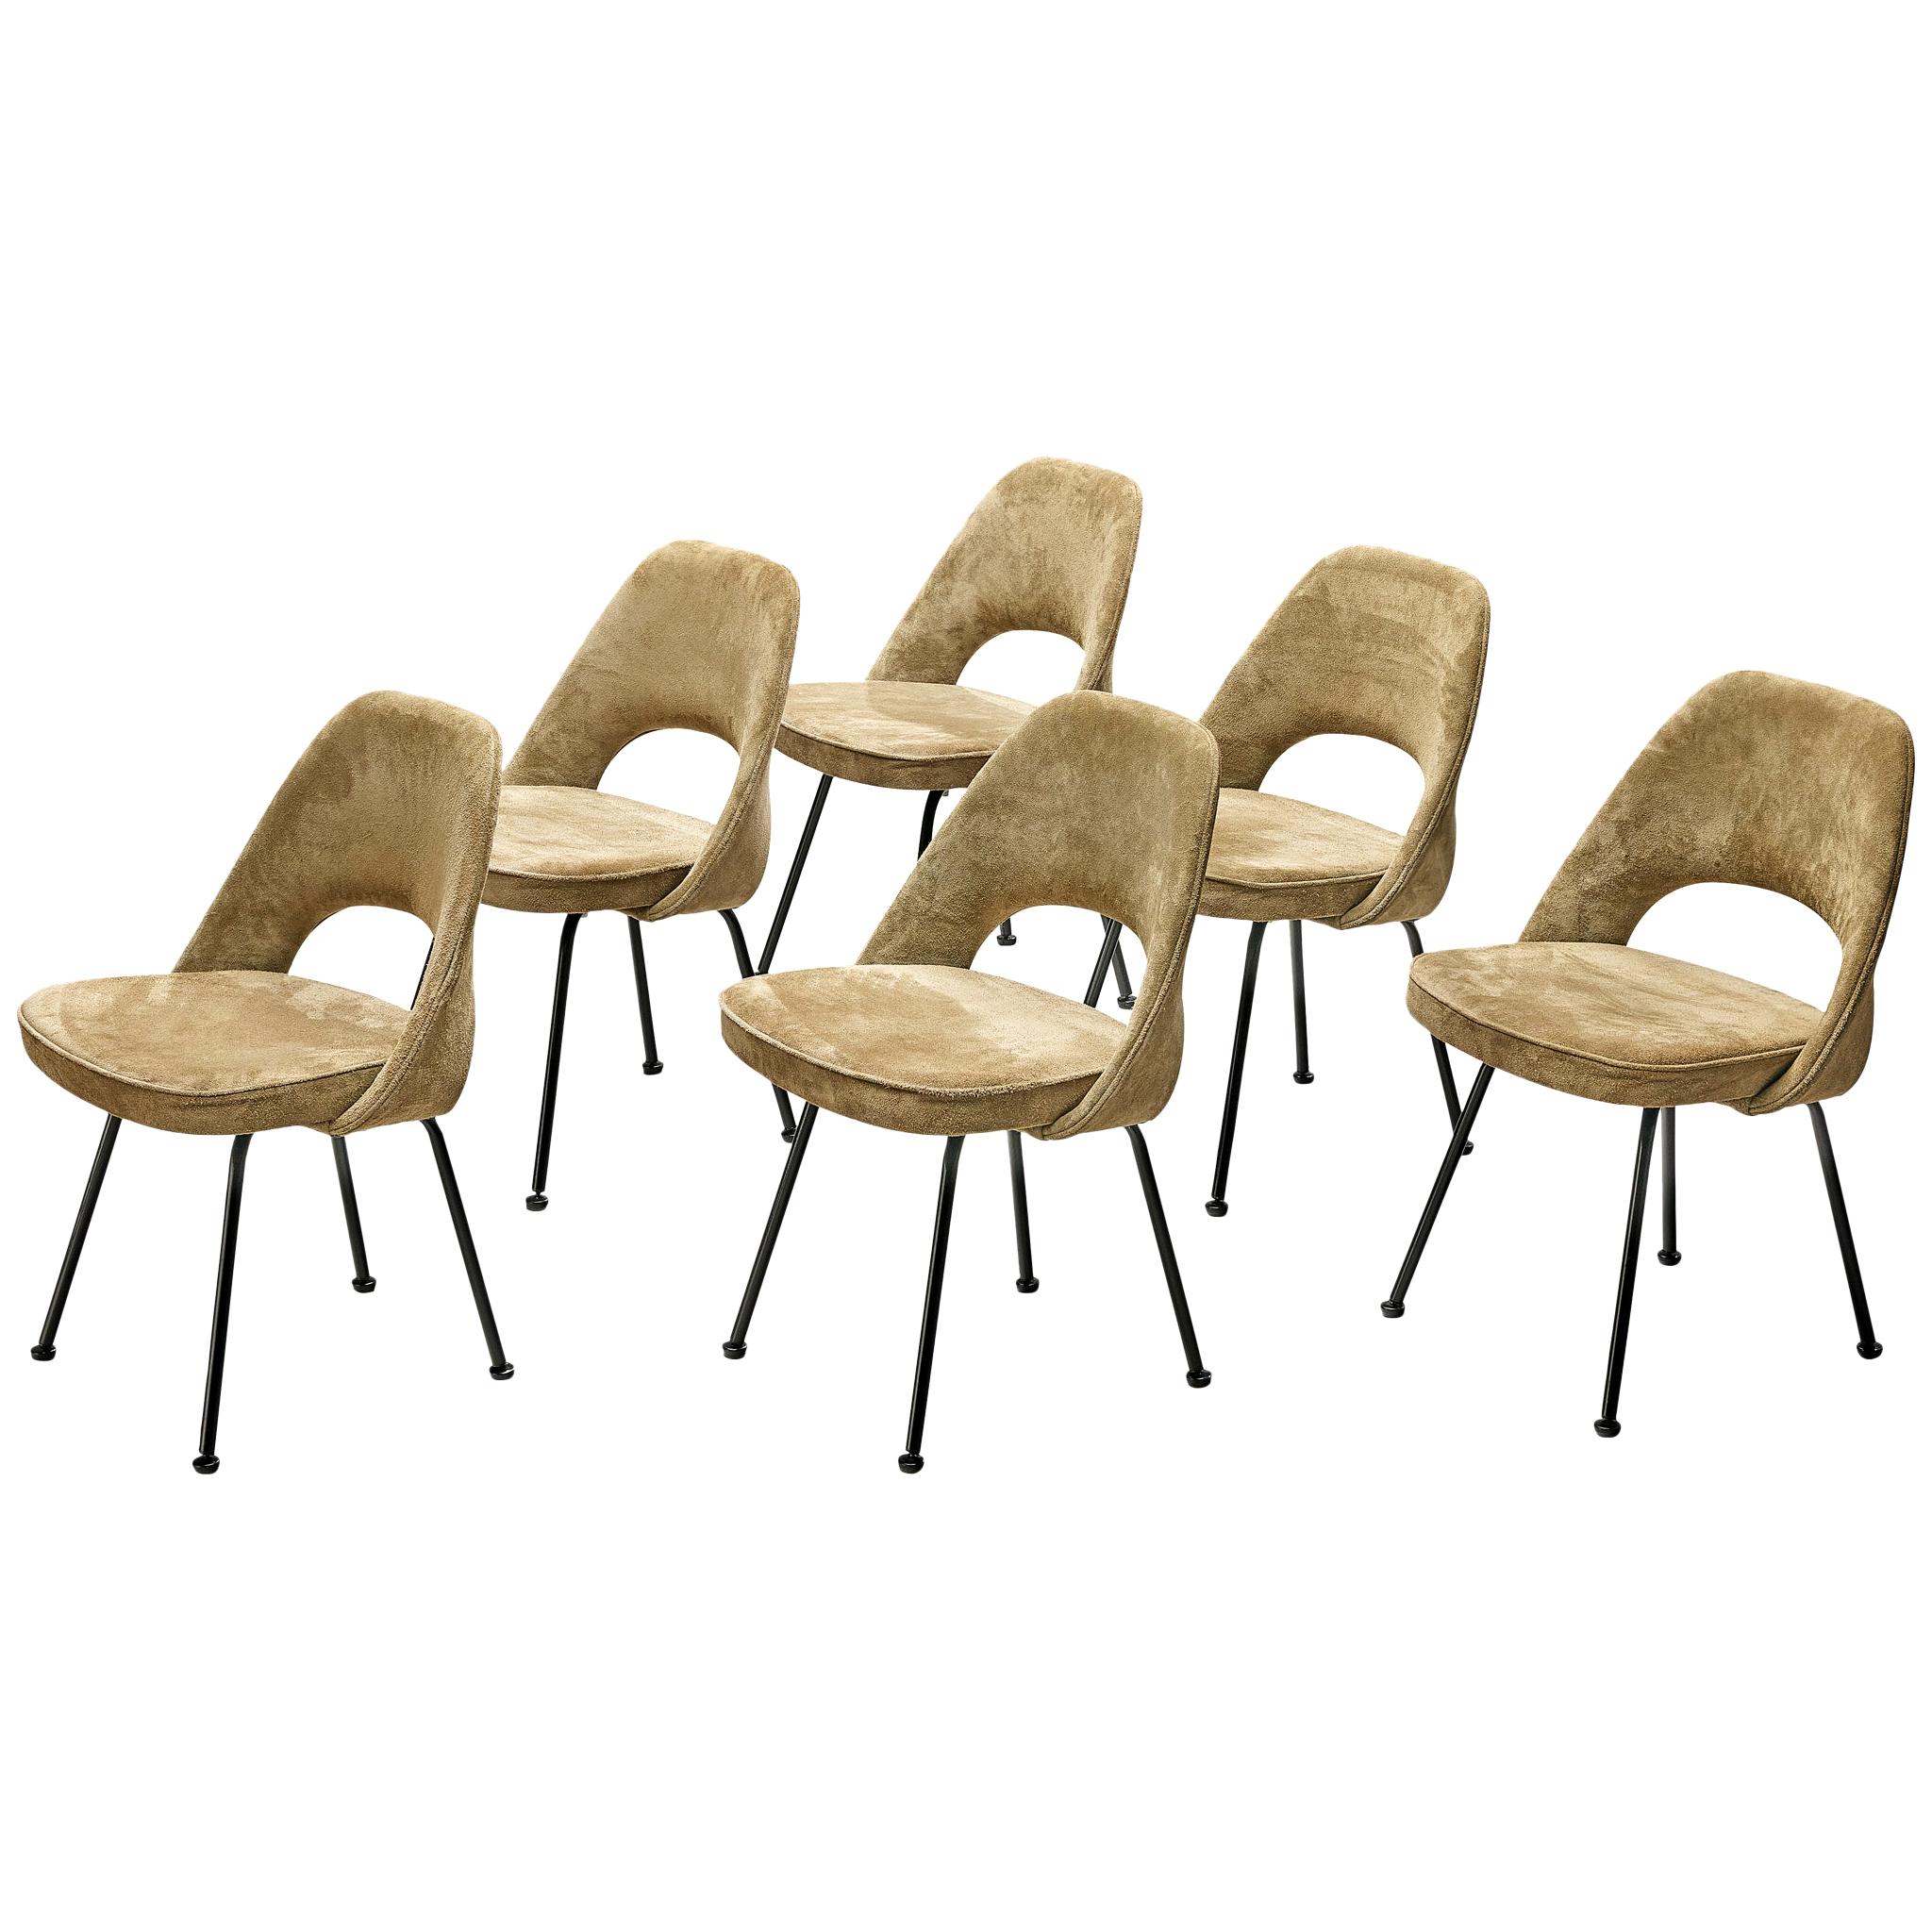 Eero Saarinen "Model 72" Chairs in Taupe Suede